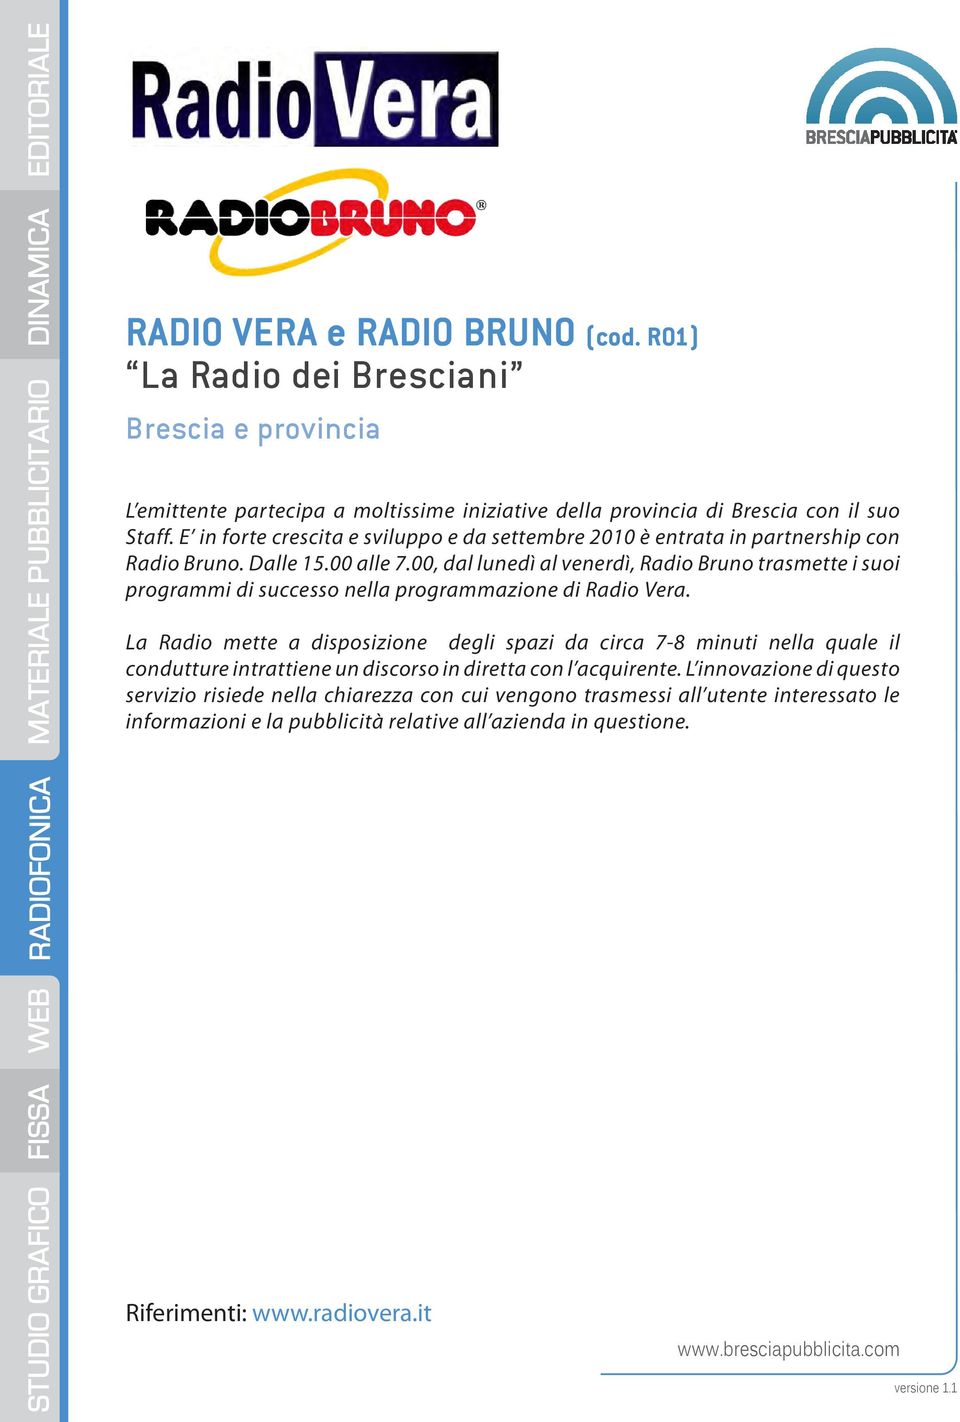 00, dal lunedì al venerdì, Radio Bruno trasmette i suoi programmi di successo nella programmazione di Radio Vera.